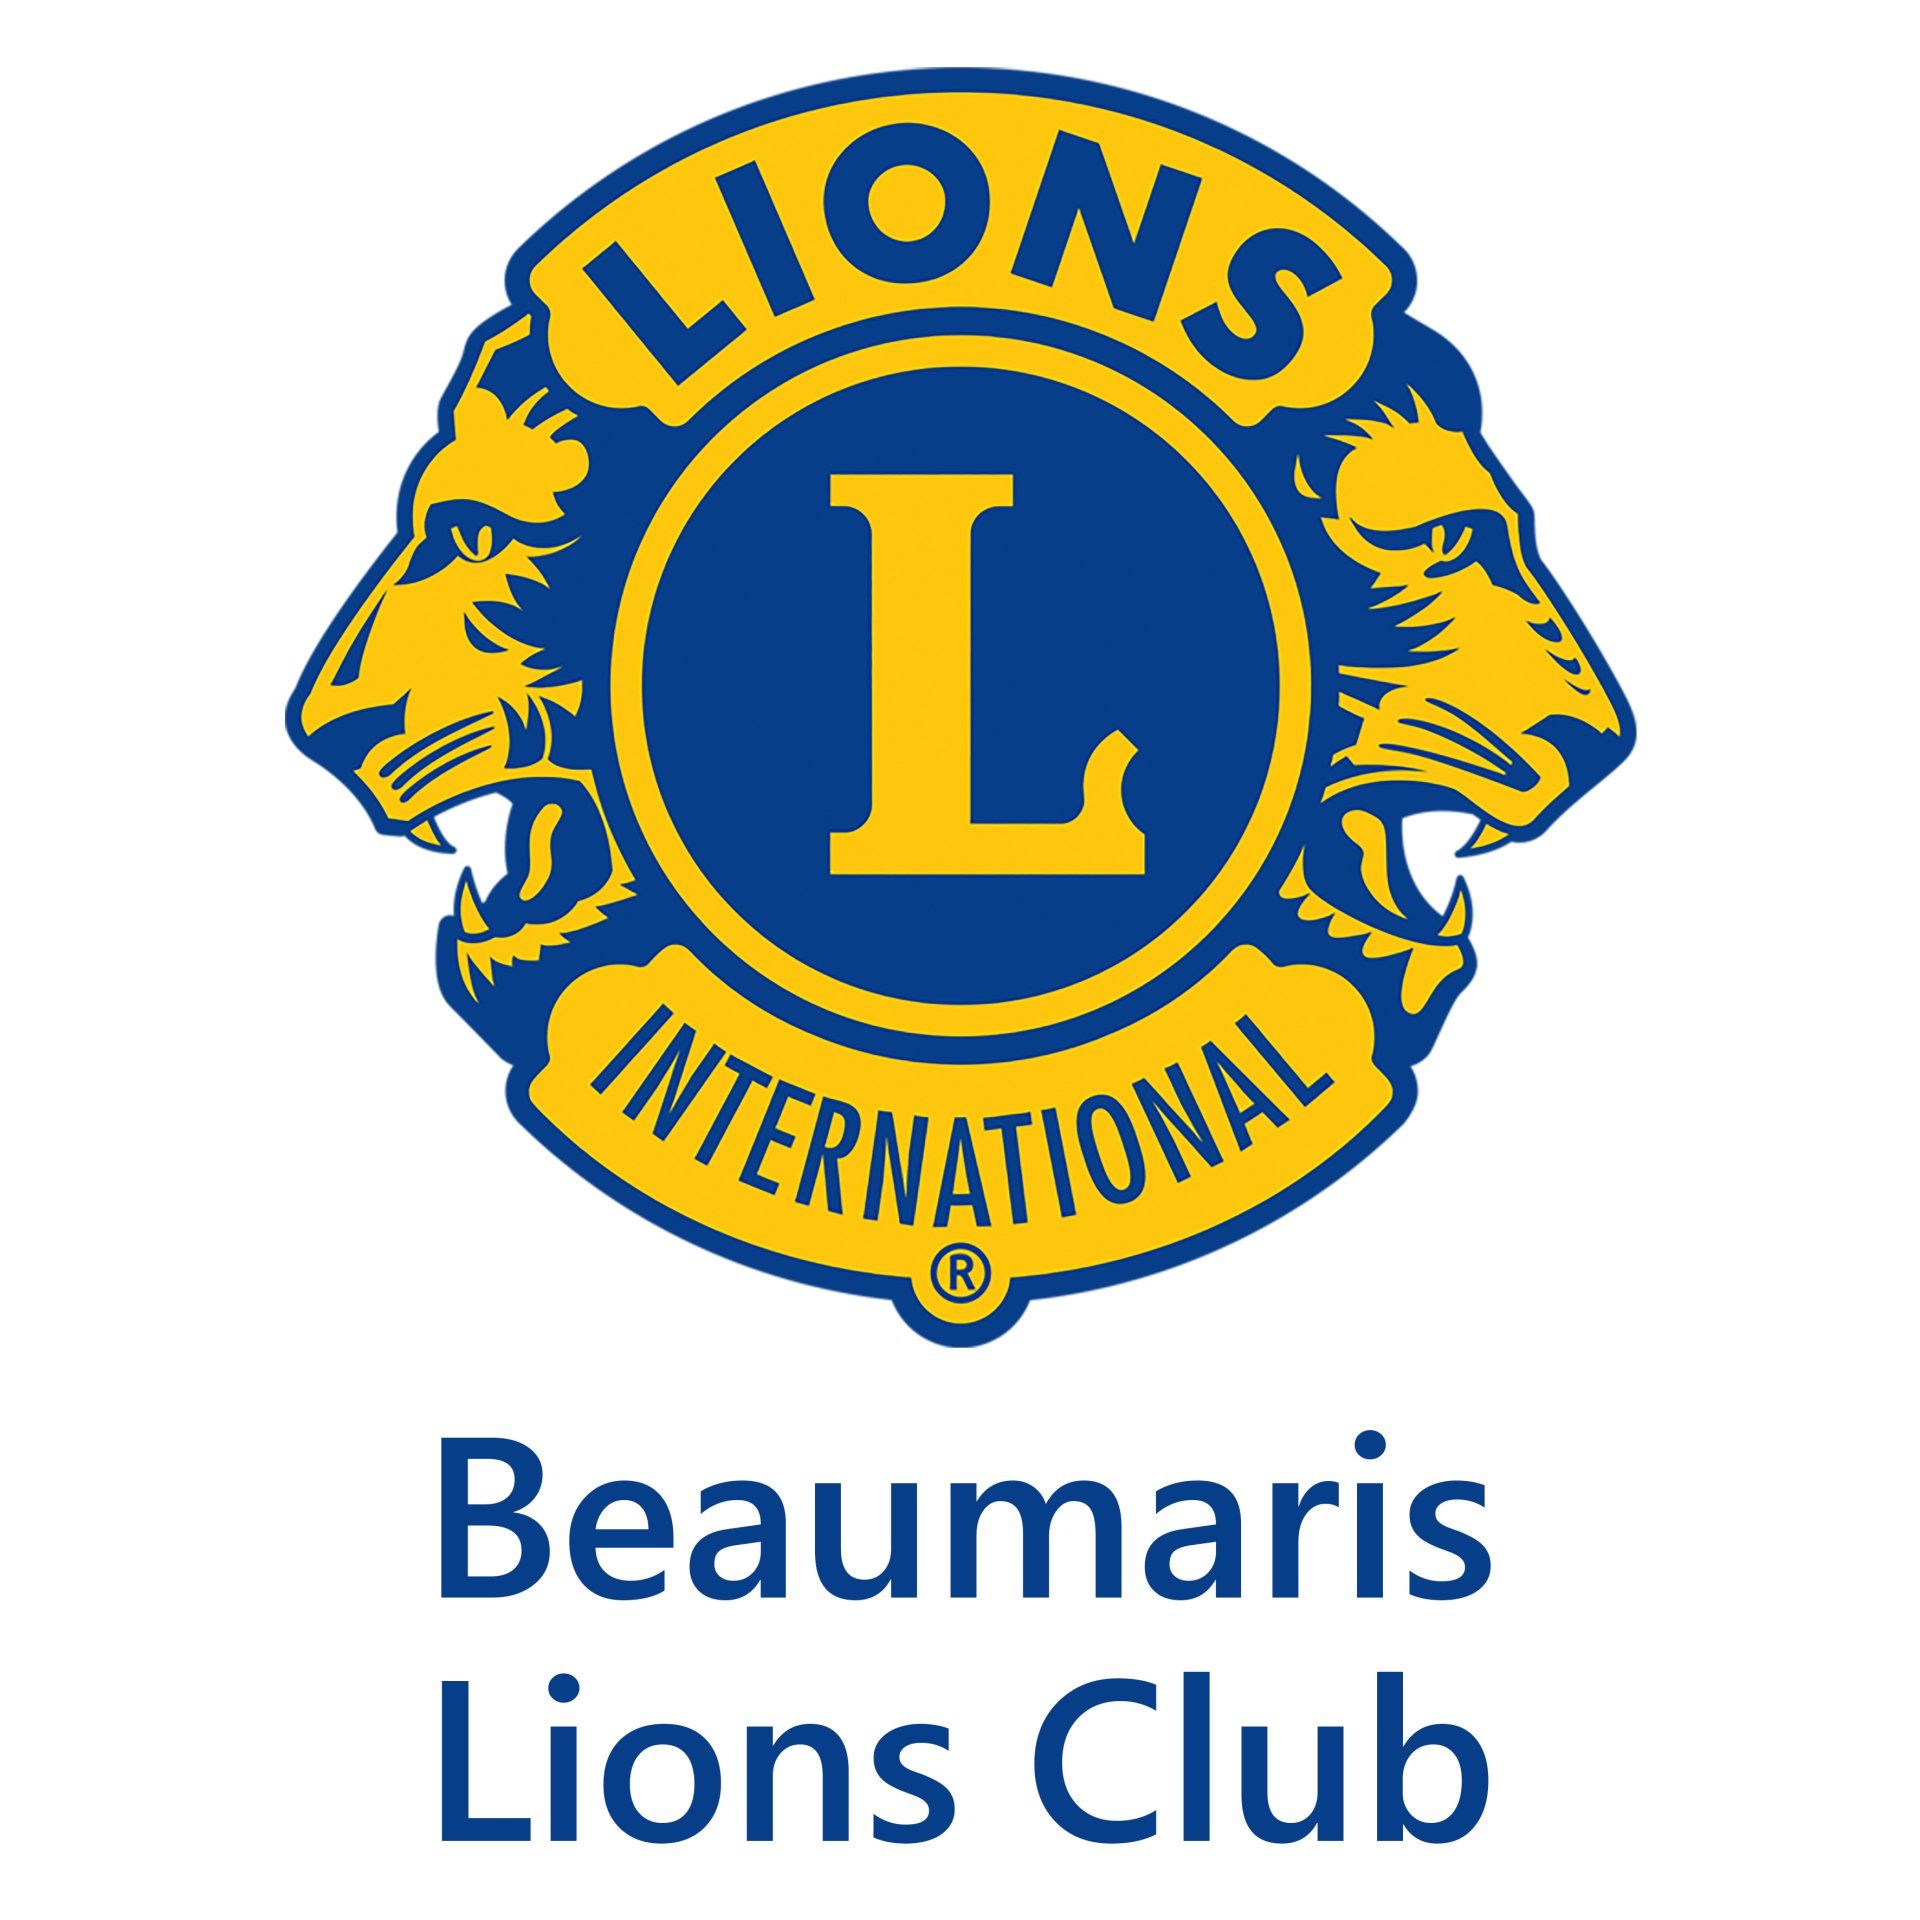 Beaumaris Lions Club